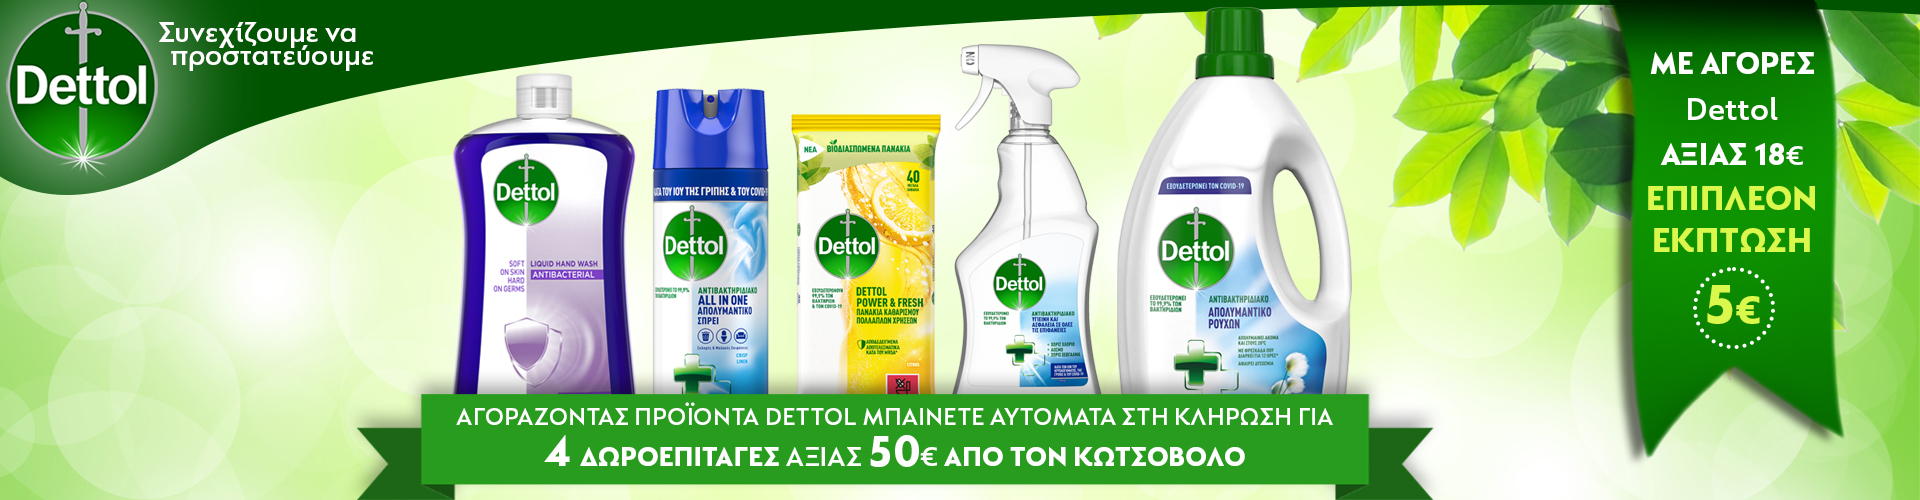 Αγοράζοντας προϊόντα Dettol μπαίνετε στην κλήρωση για 4 δωροεπιταγες των 50€ απο τον Κωτσόβολο